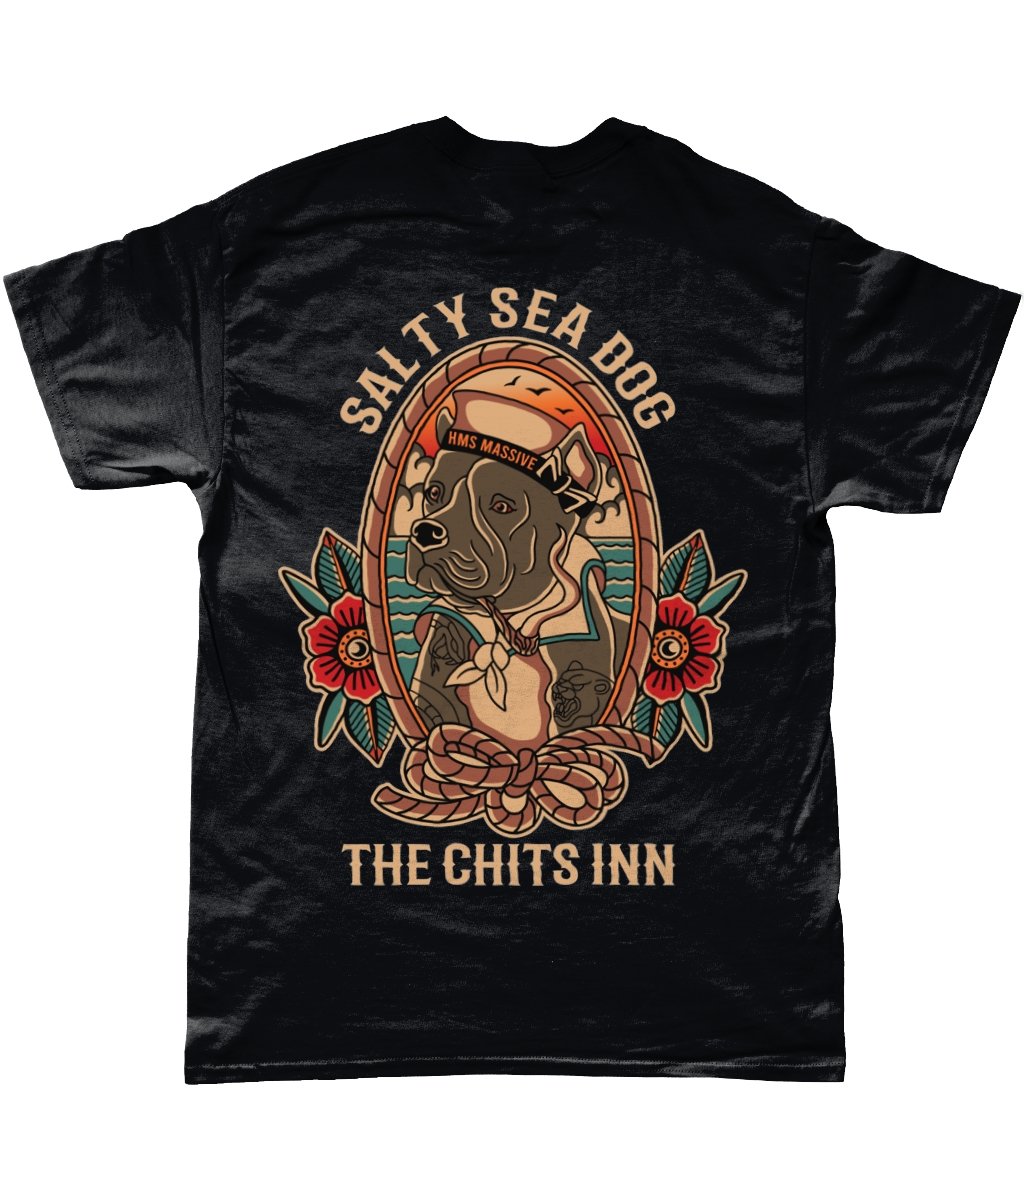 Saltiest Sea Dog - The Chits Inn